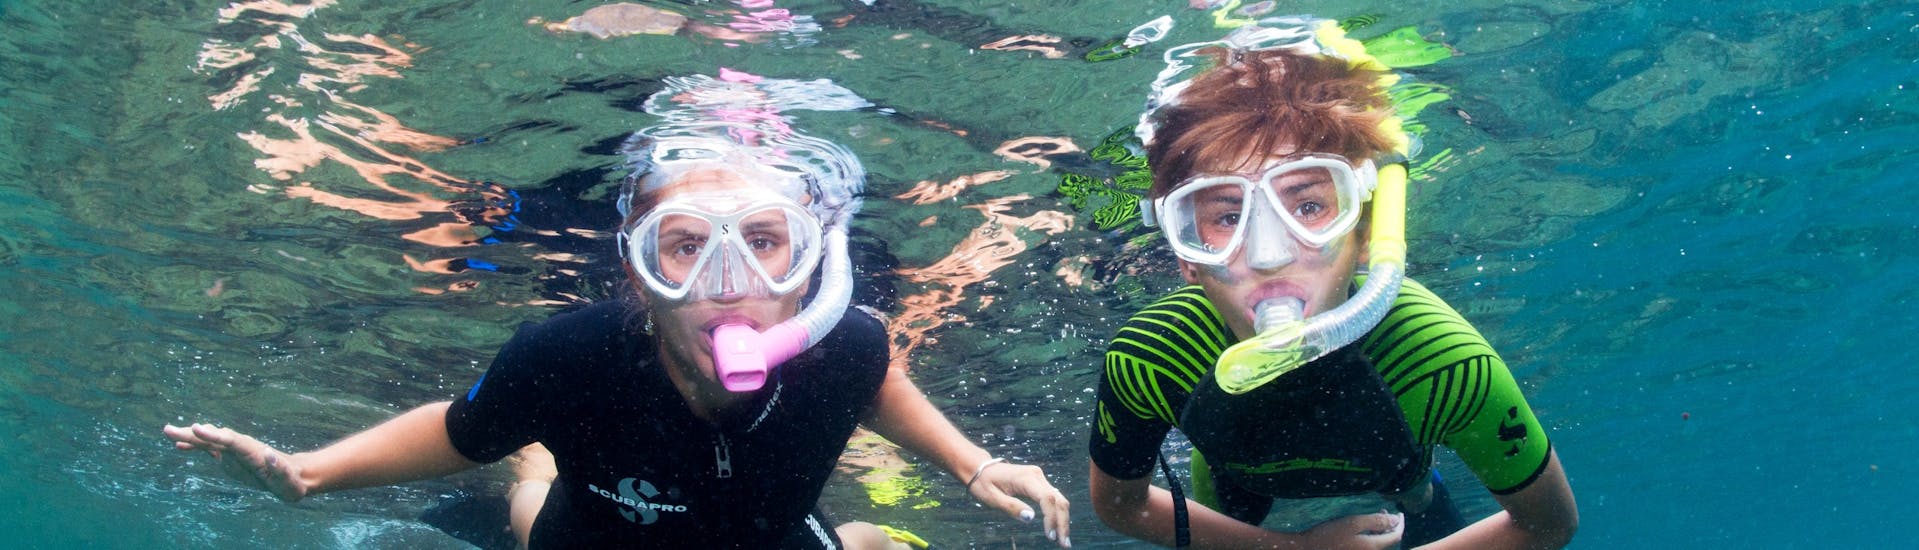 Deux enfants participent à une Excursion Snorkeling autonome à Cerbère-Banyuls avec Plongée Cap Cerbère.